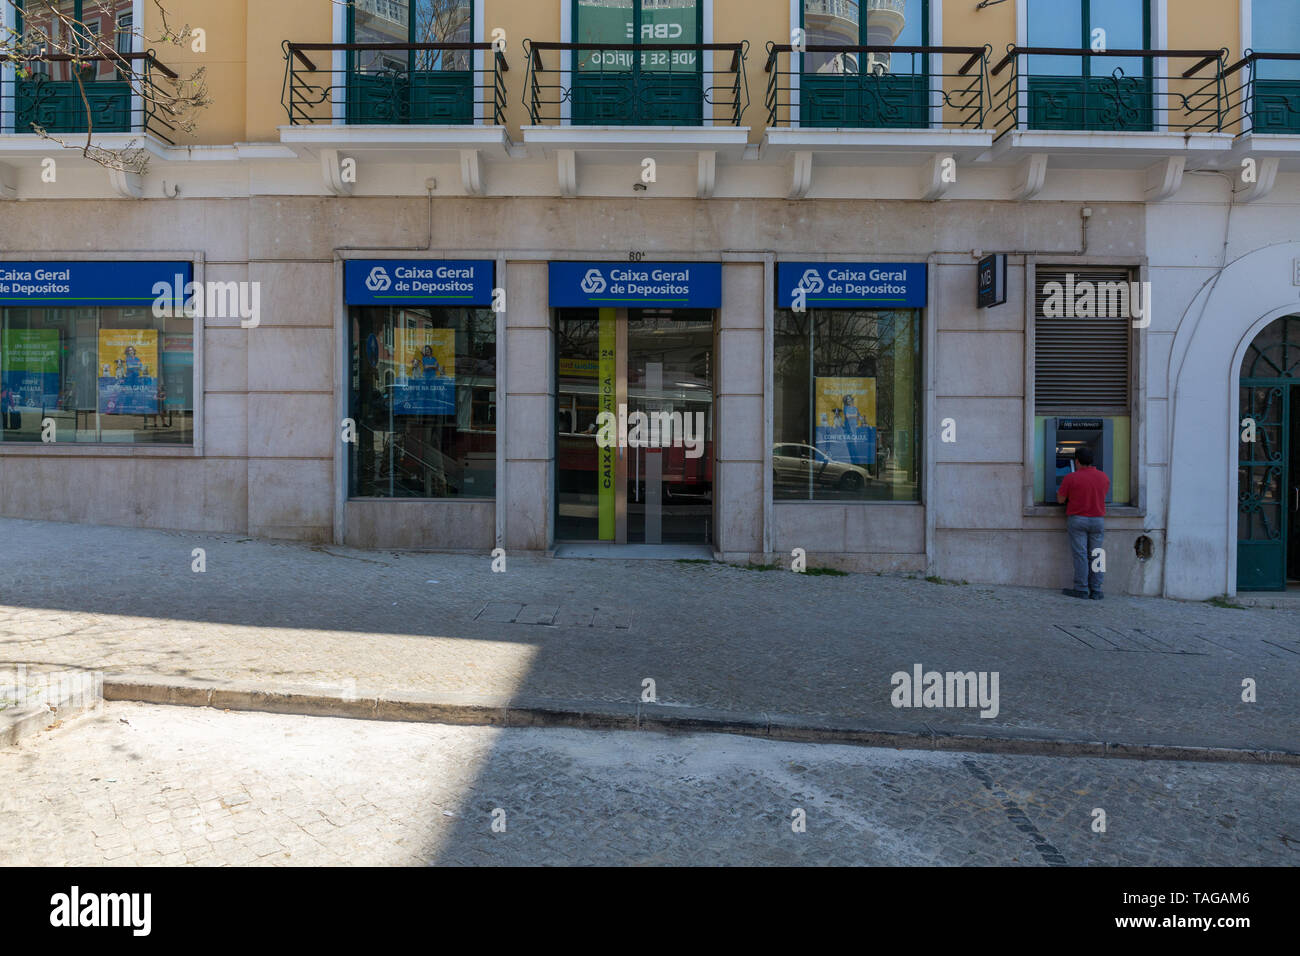 Caixa Geral de Depositos Stock Photo - Alamy